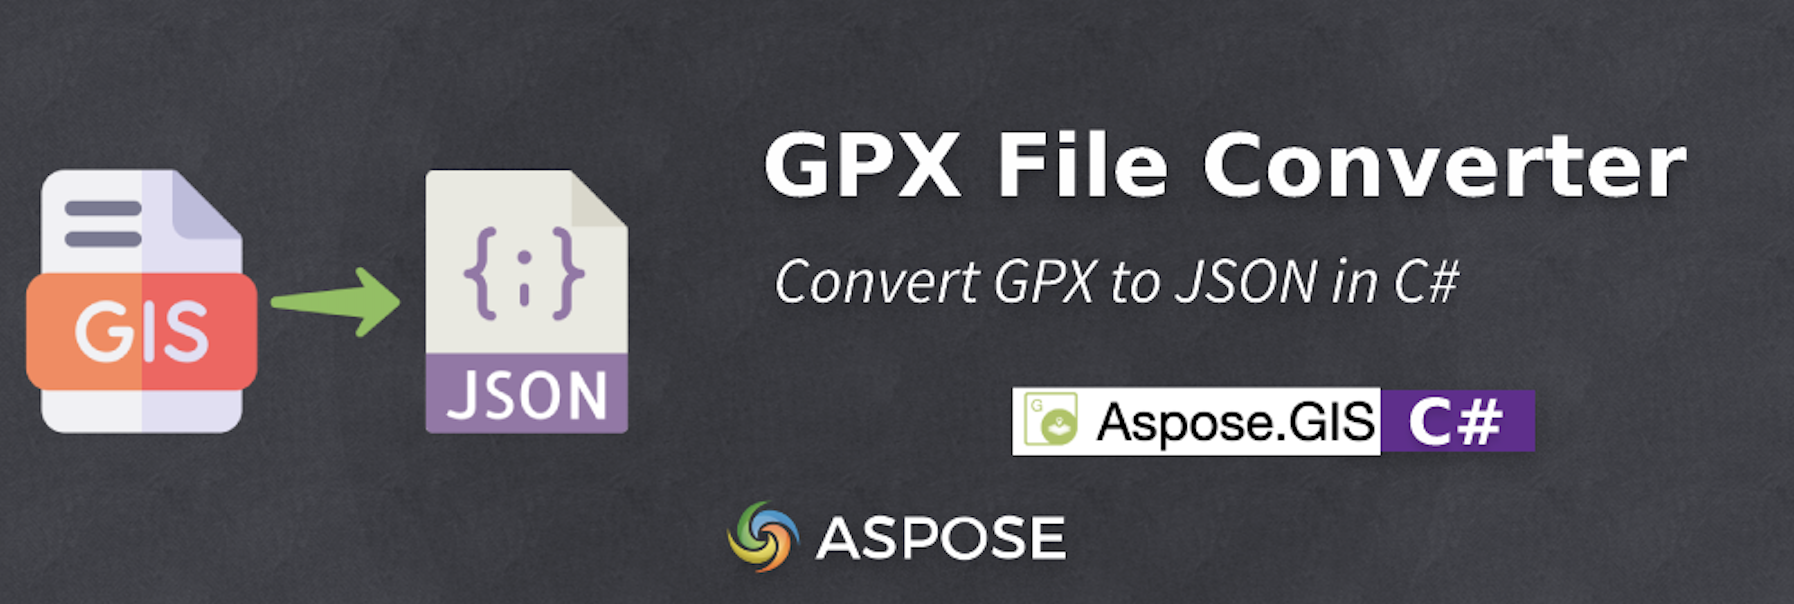 在 C# 中将 GPX 转换为 JSON - GPX 文件转换器